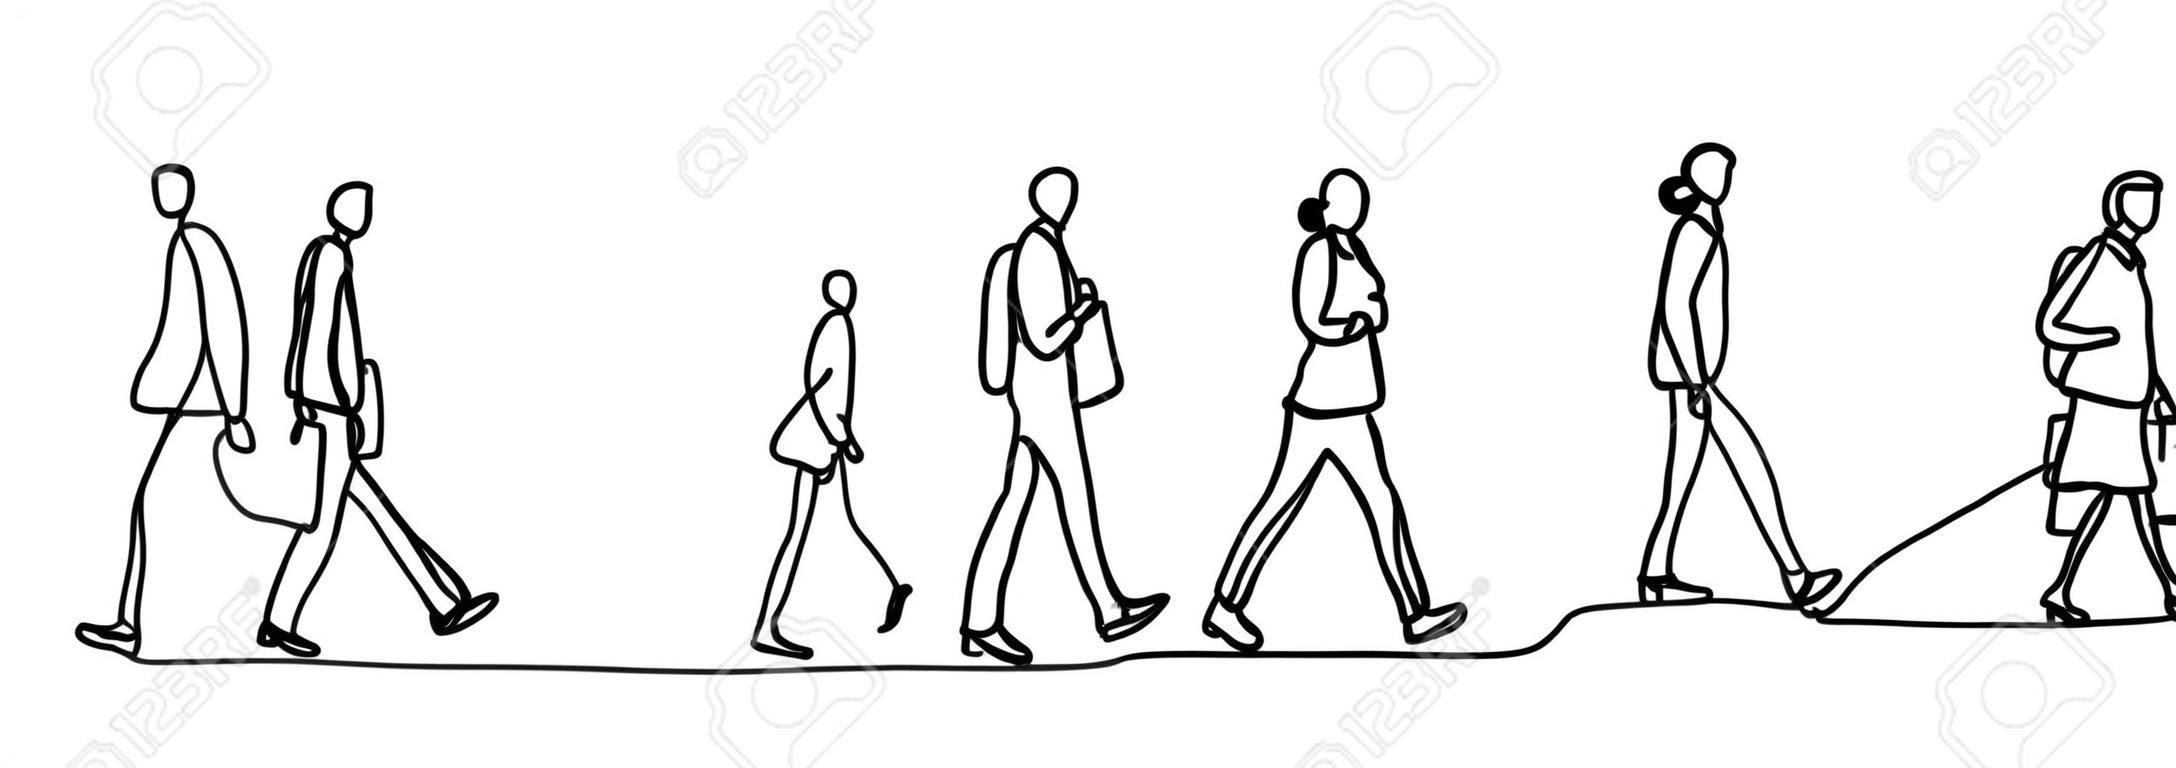 도시 통근자 하나의 연속 선 그리기 미니멀리즘 디자인 스케치 손으로 그린 벡터 일러스트 레이 션. 작업 시간 전후에 걷는 사람들.